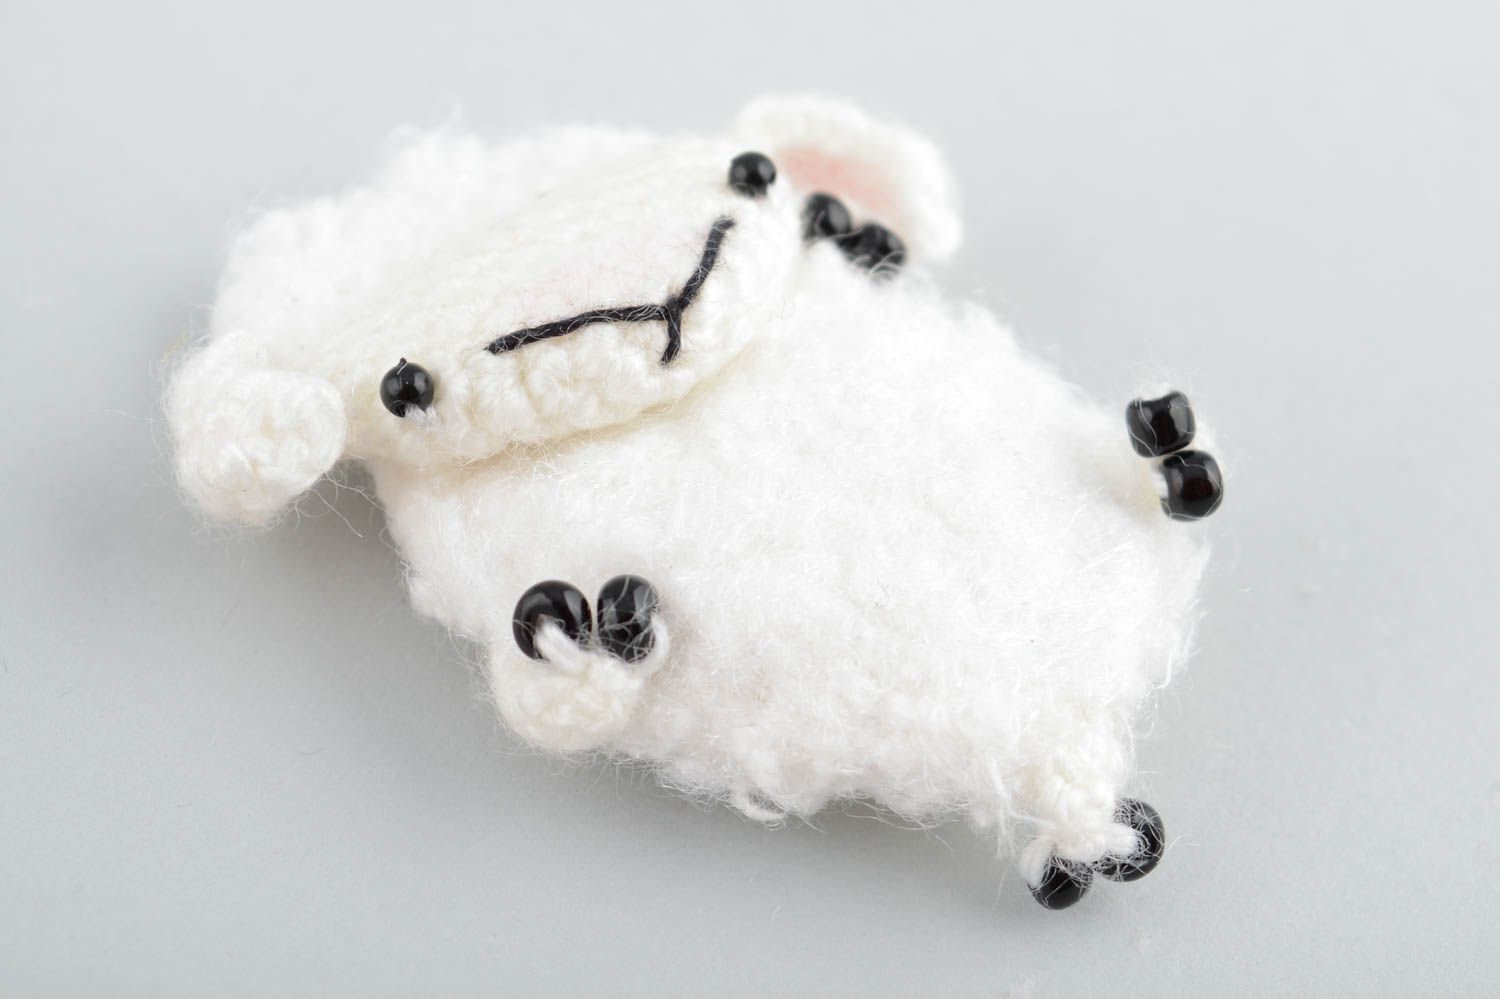 Мягкая вязаная игрушка магнит в виде овечки белая амигуруми маленькая хэнд мейд фото 4